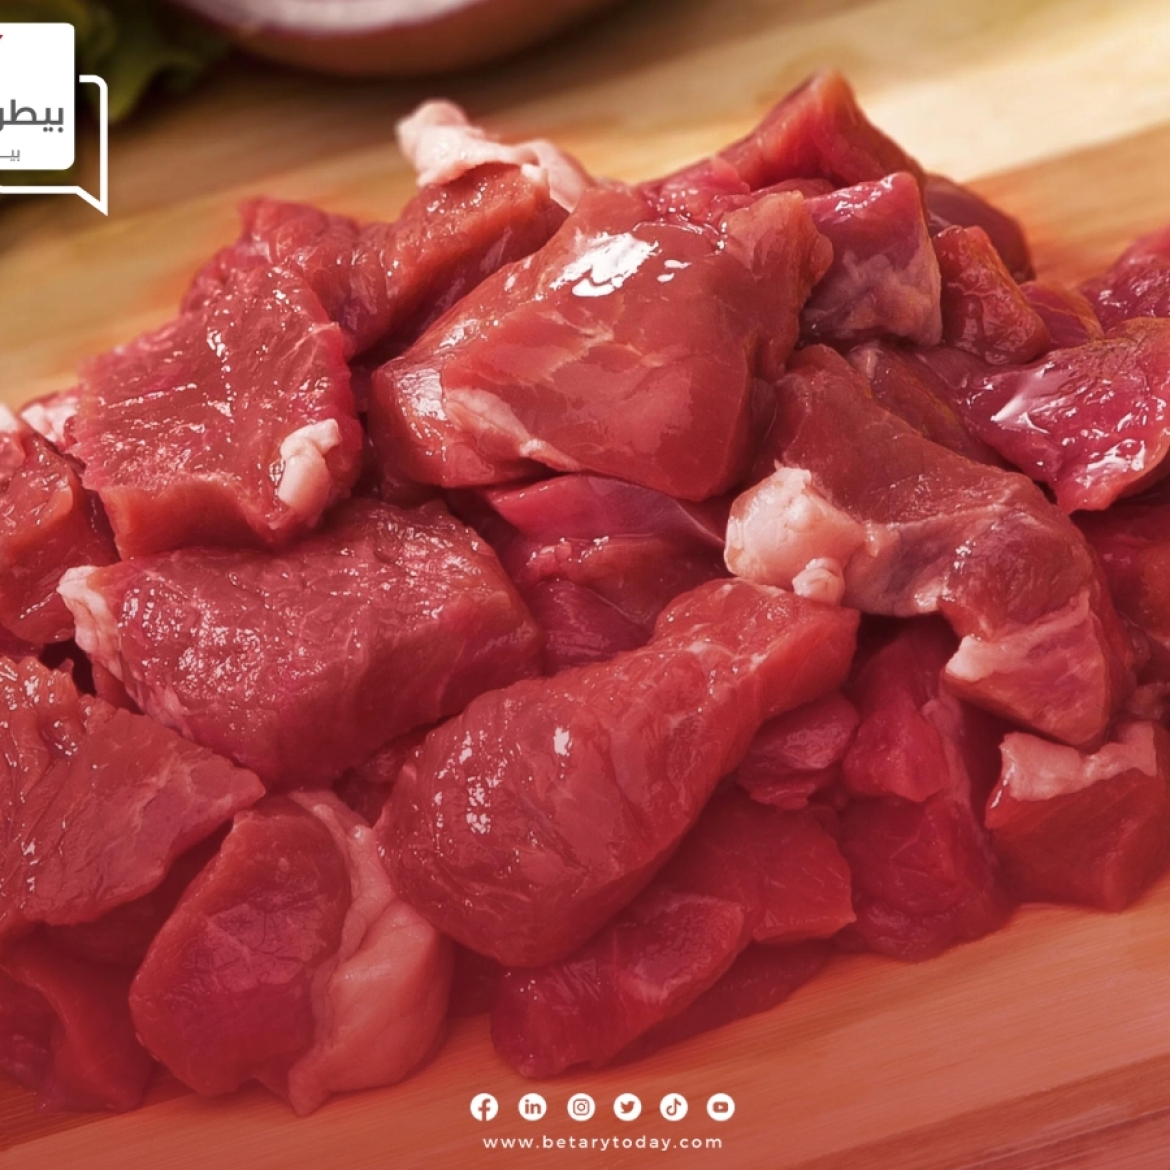 اللحوم هتبقي للجميع... تعرف على أسعار اللحوم الحمراء البلدي والمستوردة اليوم الثلاثاء